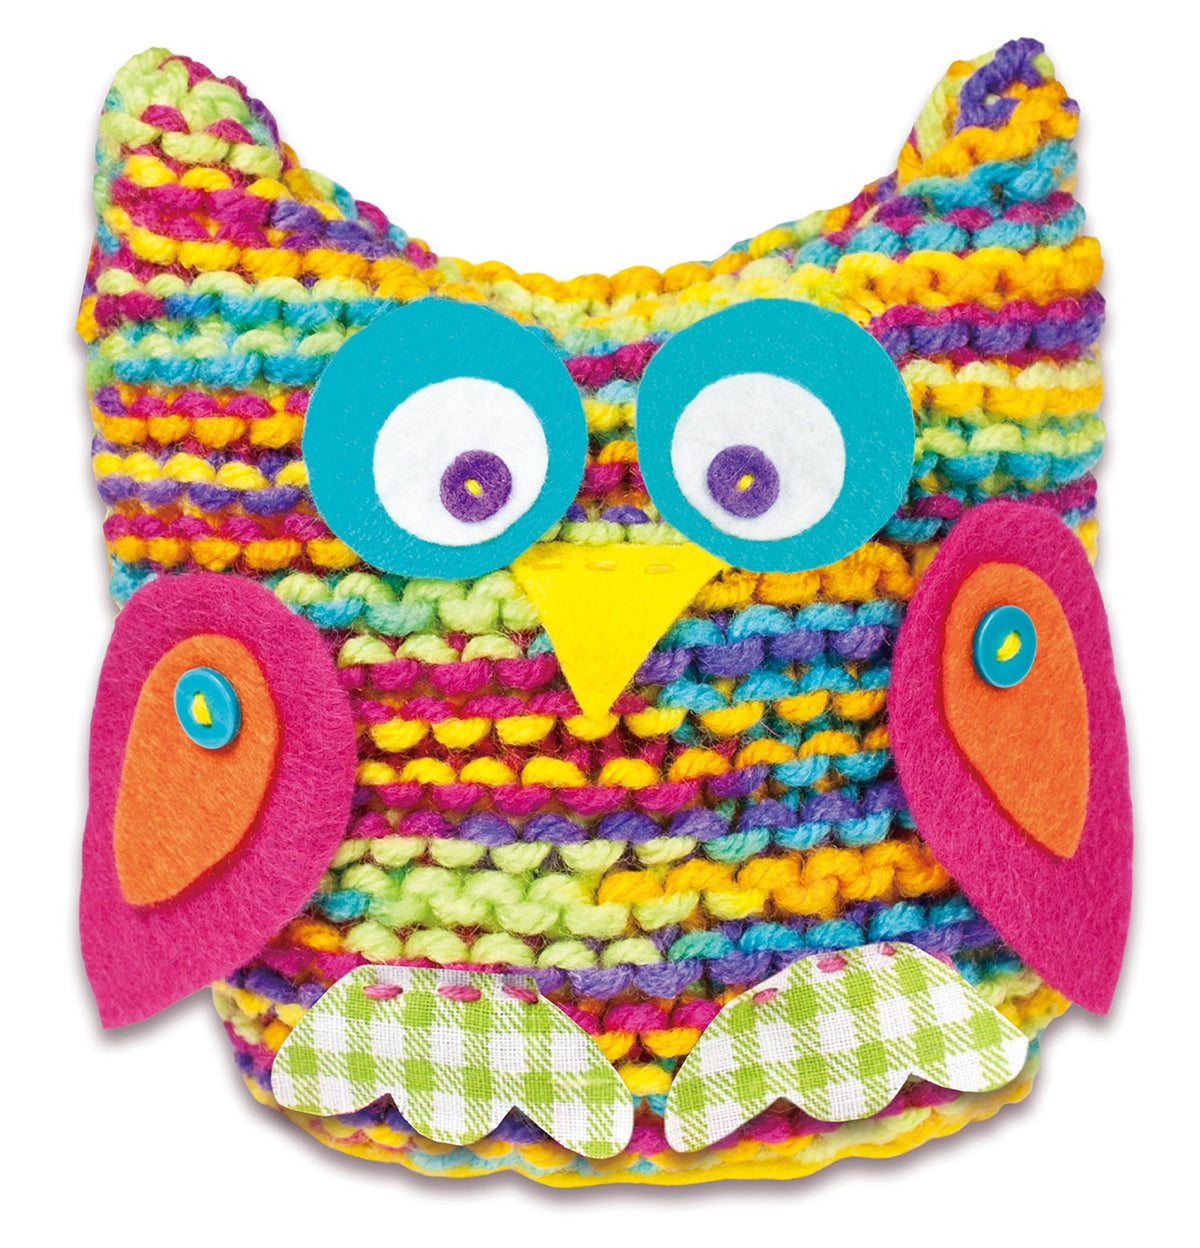 Knit an Owl - Galt